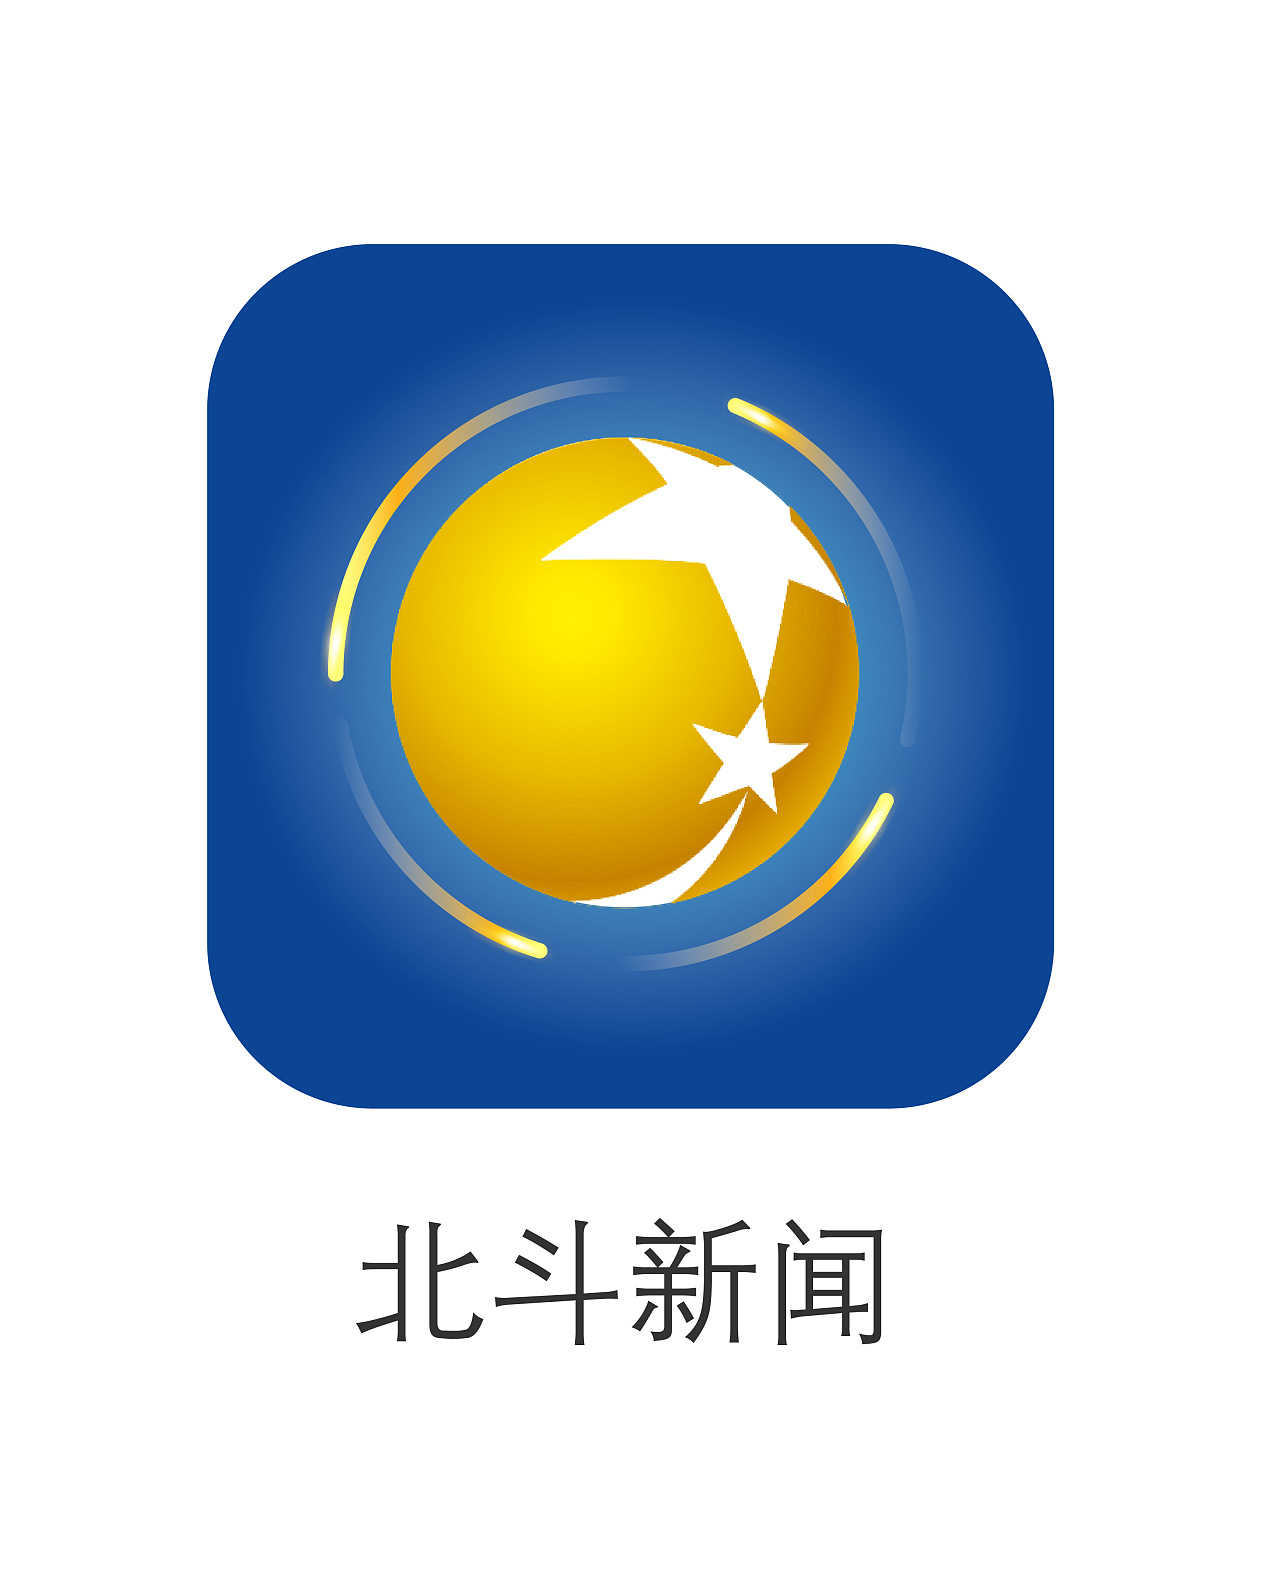 辽宁广播电视台海报logo平面设计